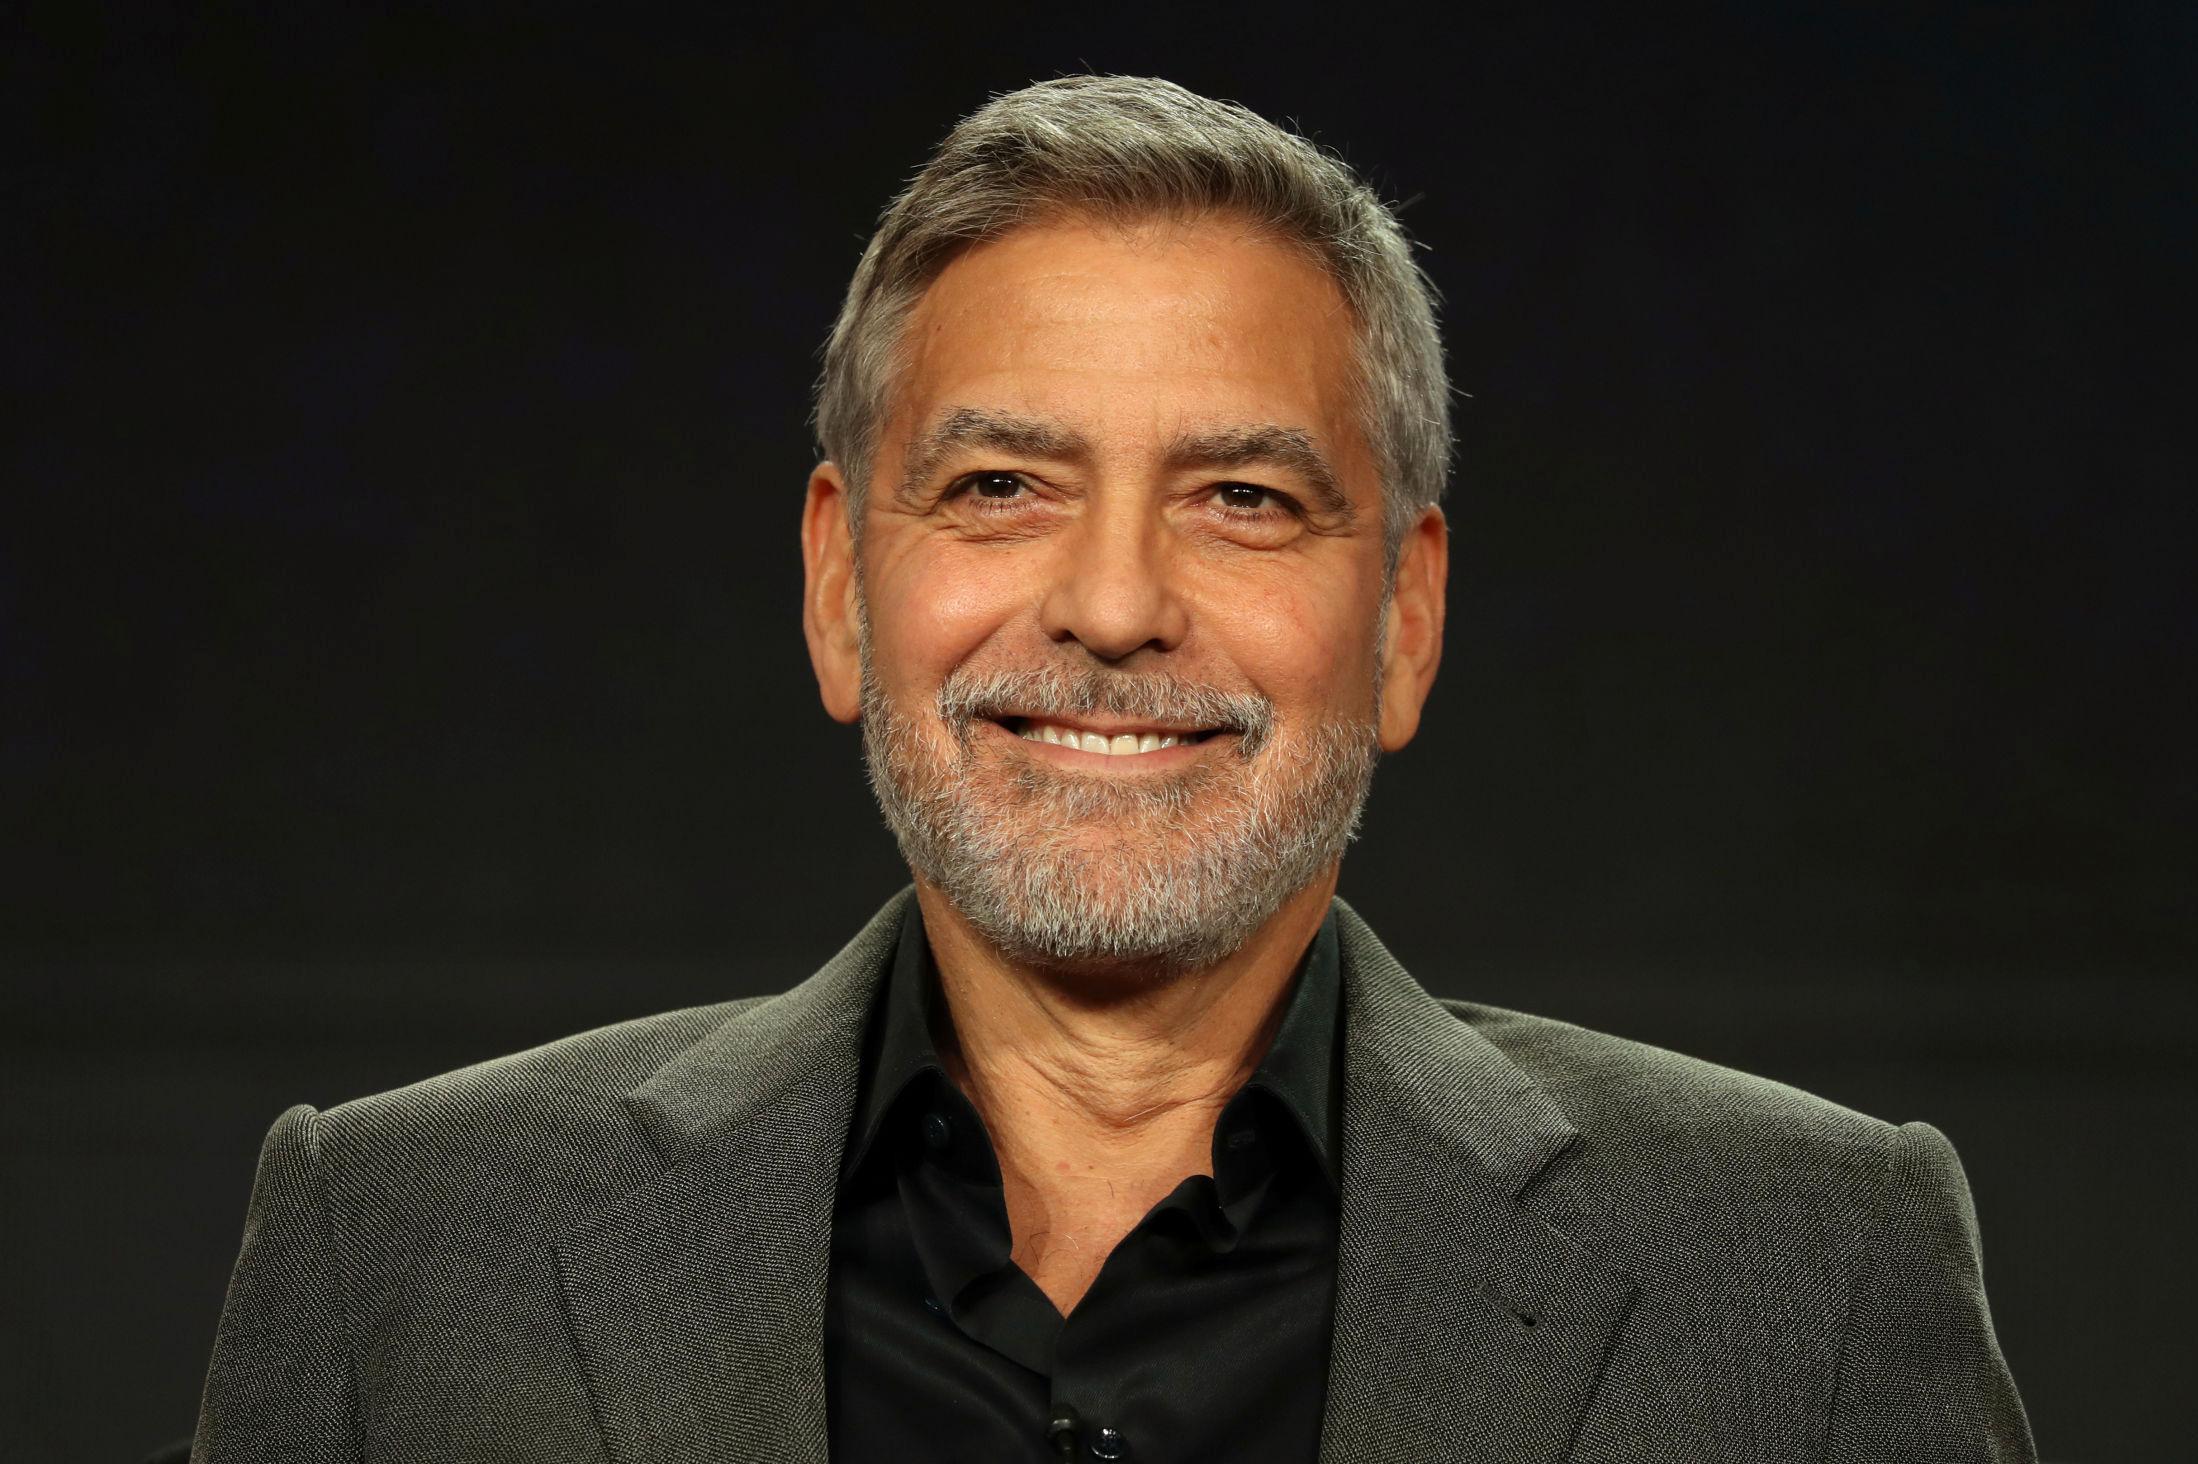 TEQUILA-SUKSESS: George Clooney startet tequilamerket Casamigos i 2013, og solgte det senere for en stor sum. Foto: REUTERS/Lucy Nicholson